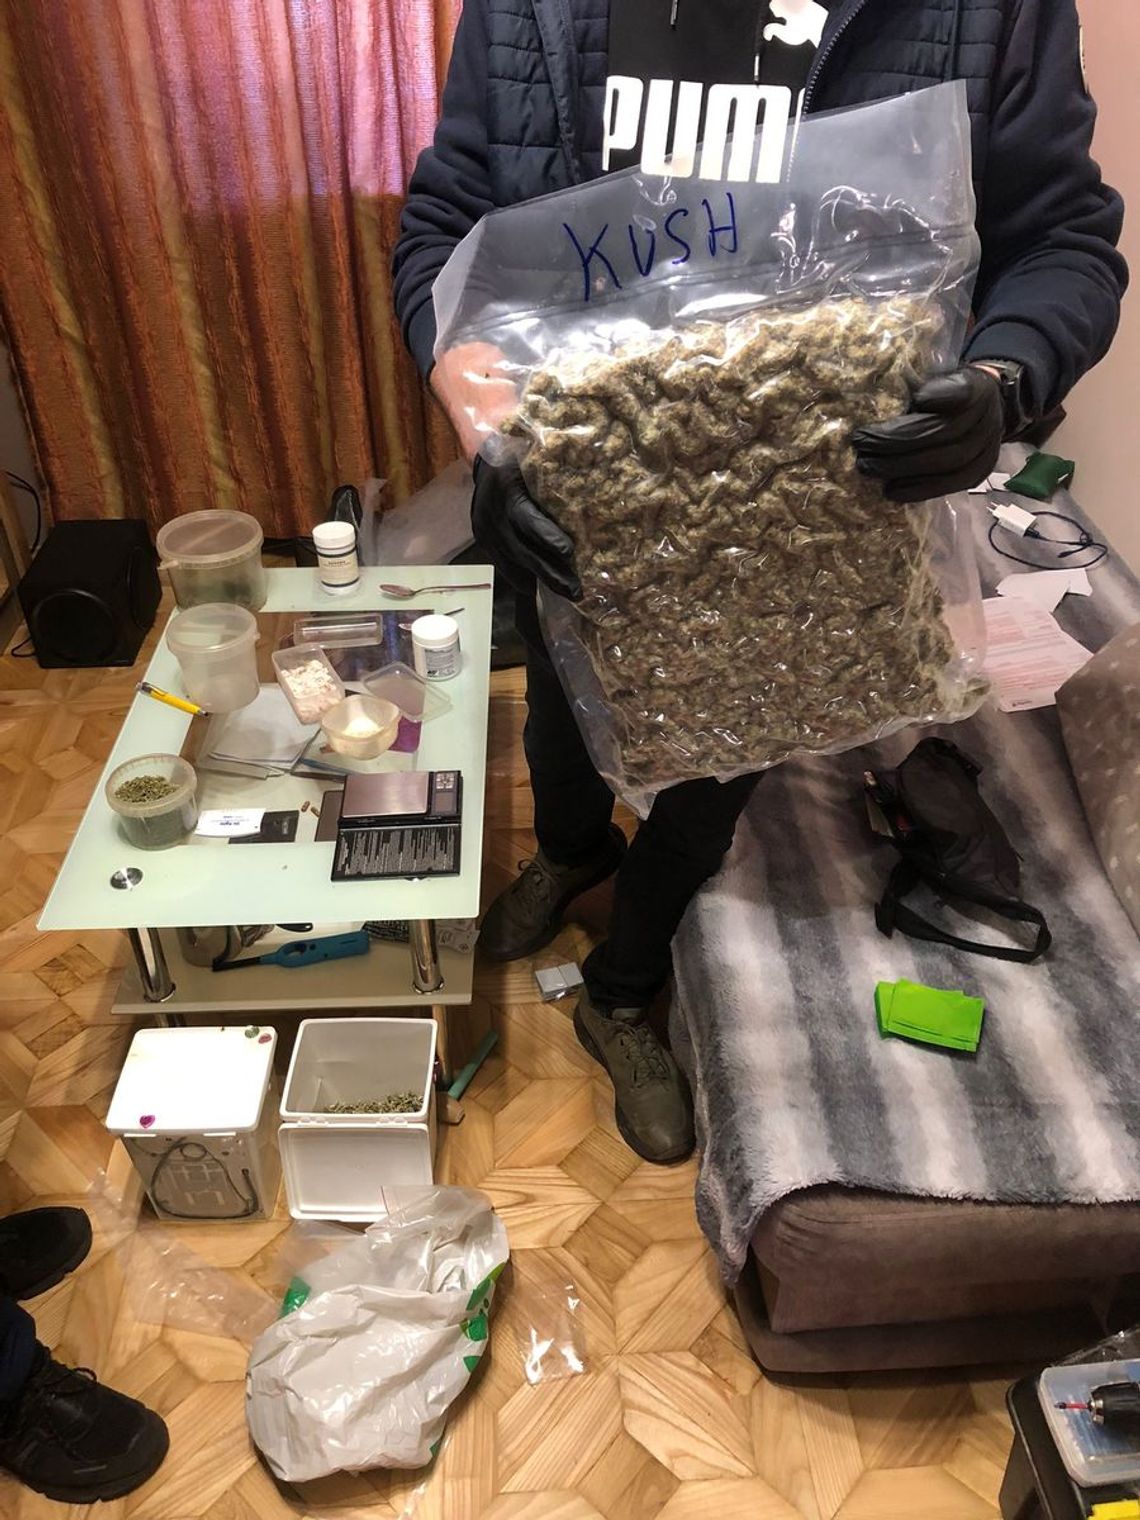 Areszt za posiadanie ponad dwóch kilogramów narkotyków